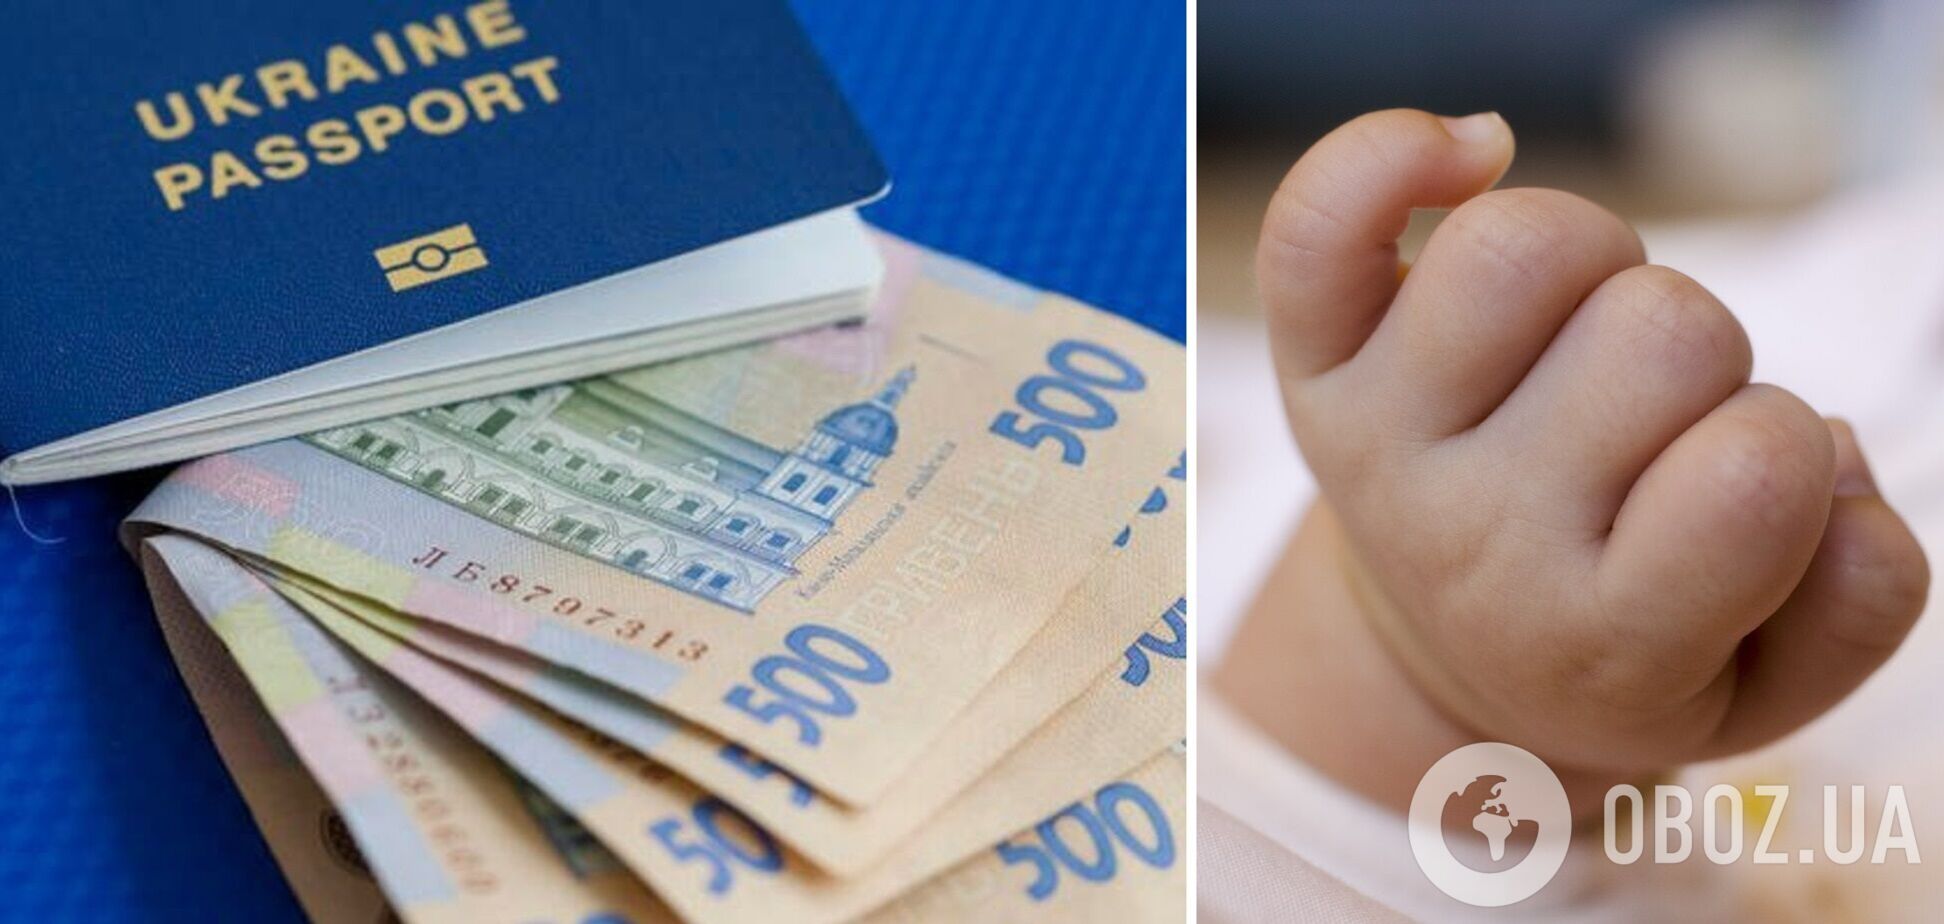 Народжені у 2019 році отримають понад 600 тис. грн на 'економічний паспорт'